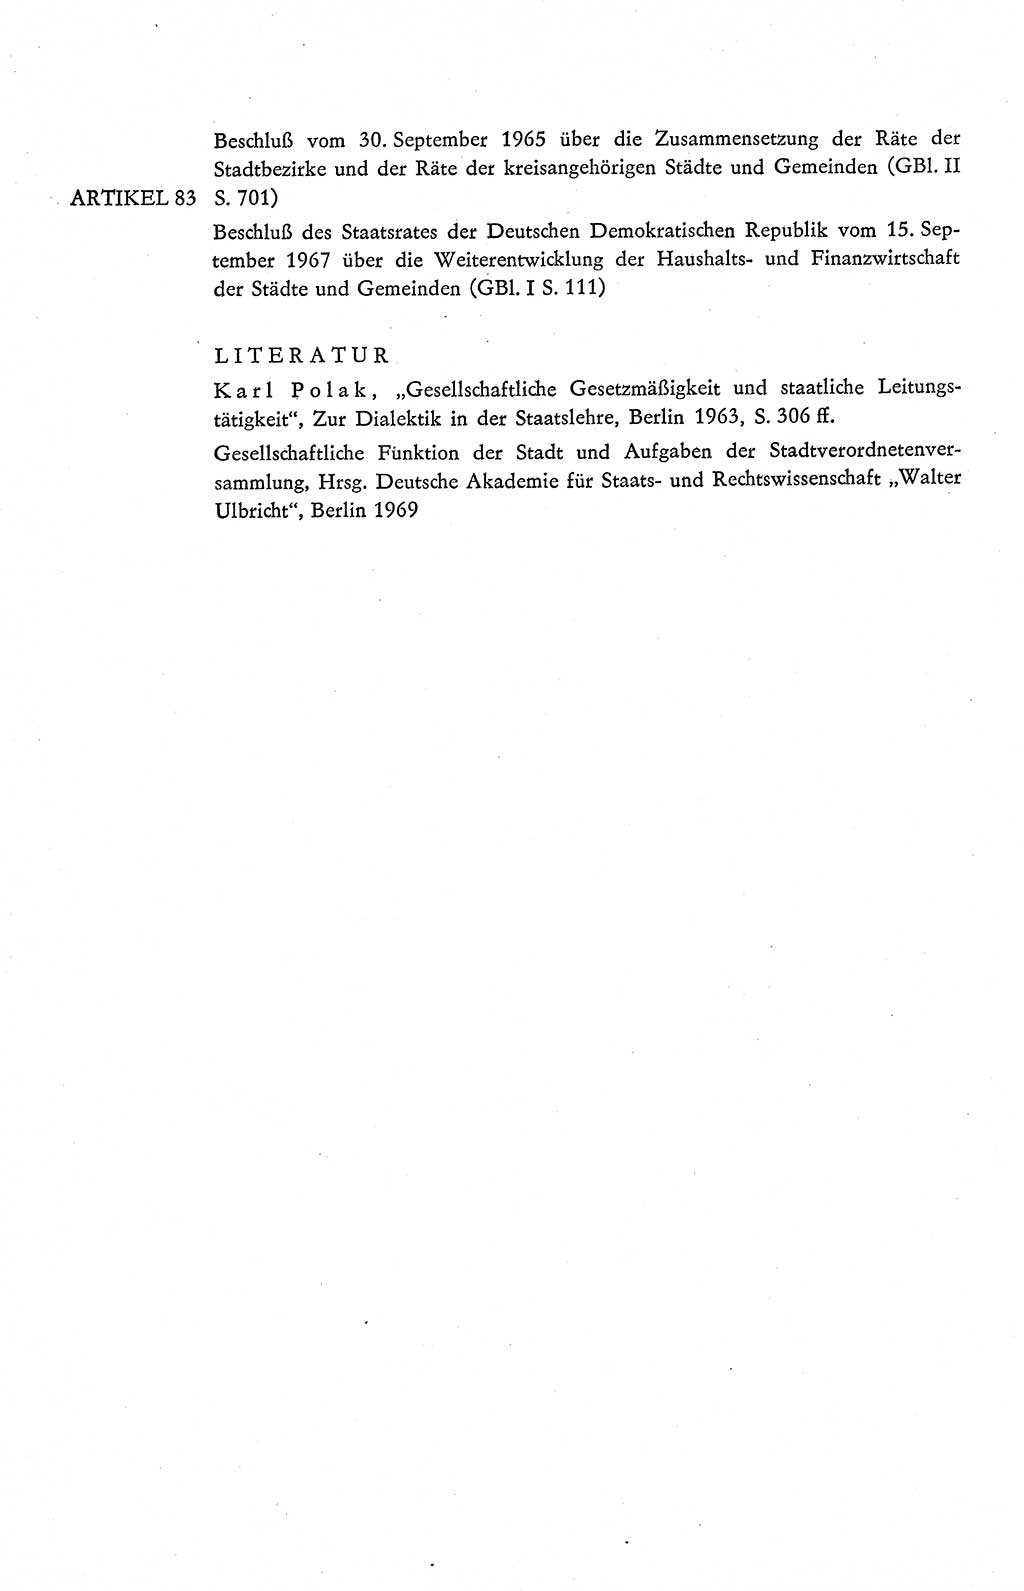 Verfassung der Deutschen Demokratischen Republik (DDR), Dokumente, Kommentar 1969, Band 2, Seite 390 (Verf. DDR Dok. Komm. 1969, Bd. 2, S. 390)